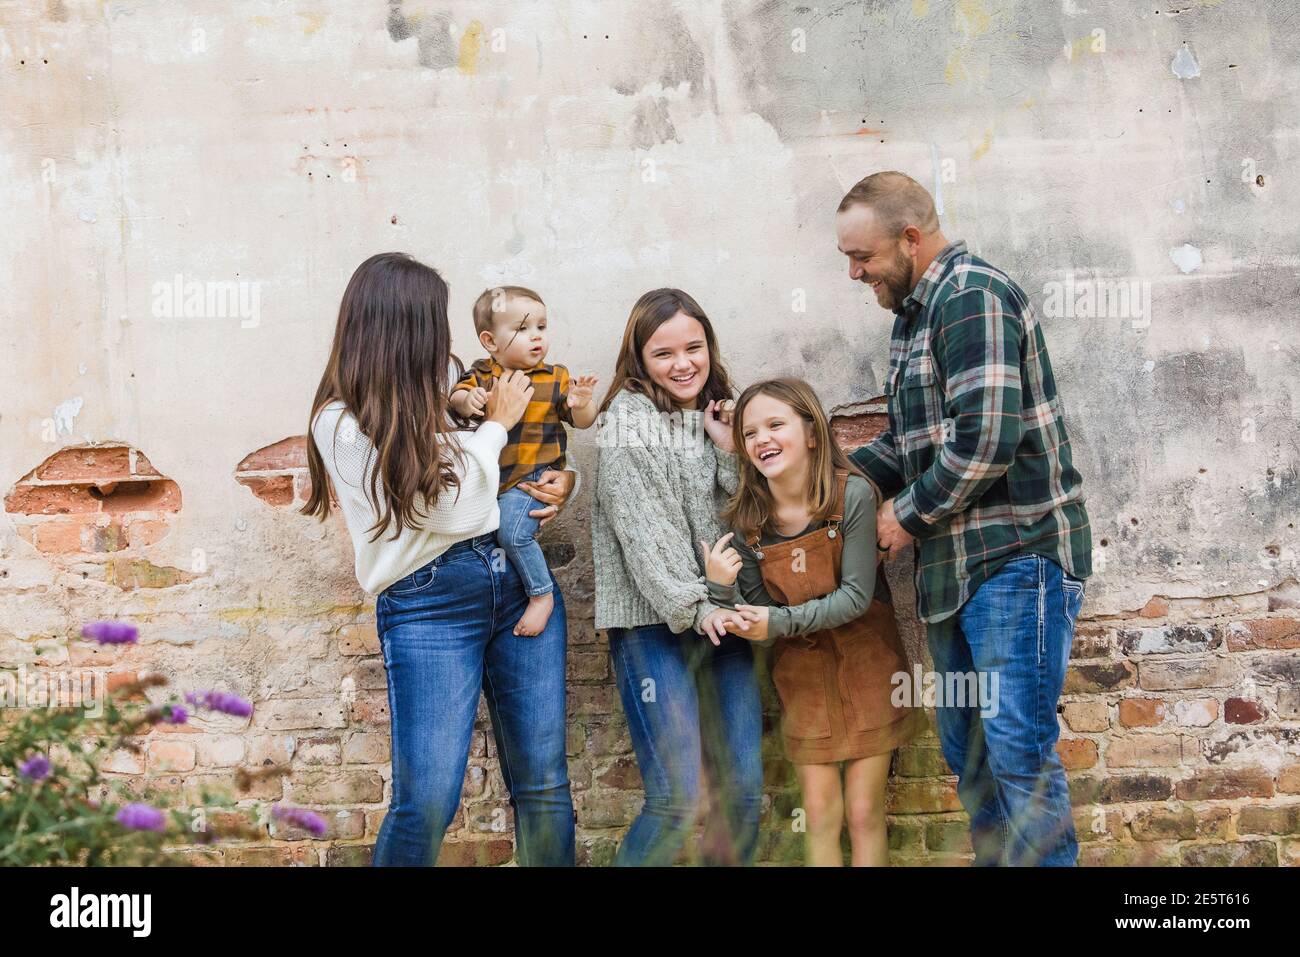 Eine fünfköpfige Familie mit zwei Mädchen und einem Baby Junge steht an einer urbane alte Ziegelmauer und lacht Stockfoto